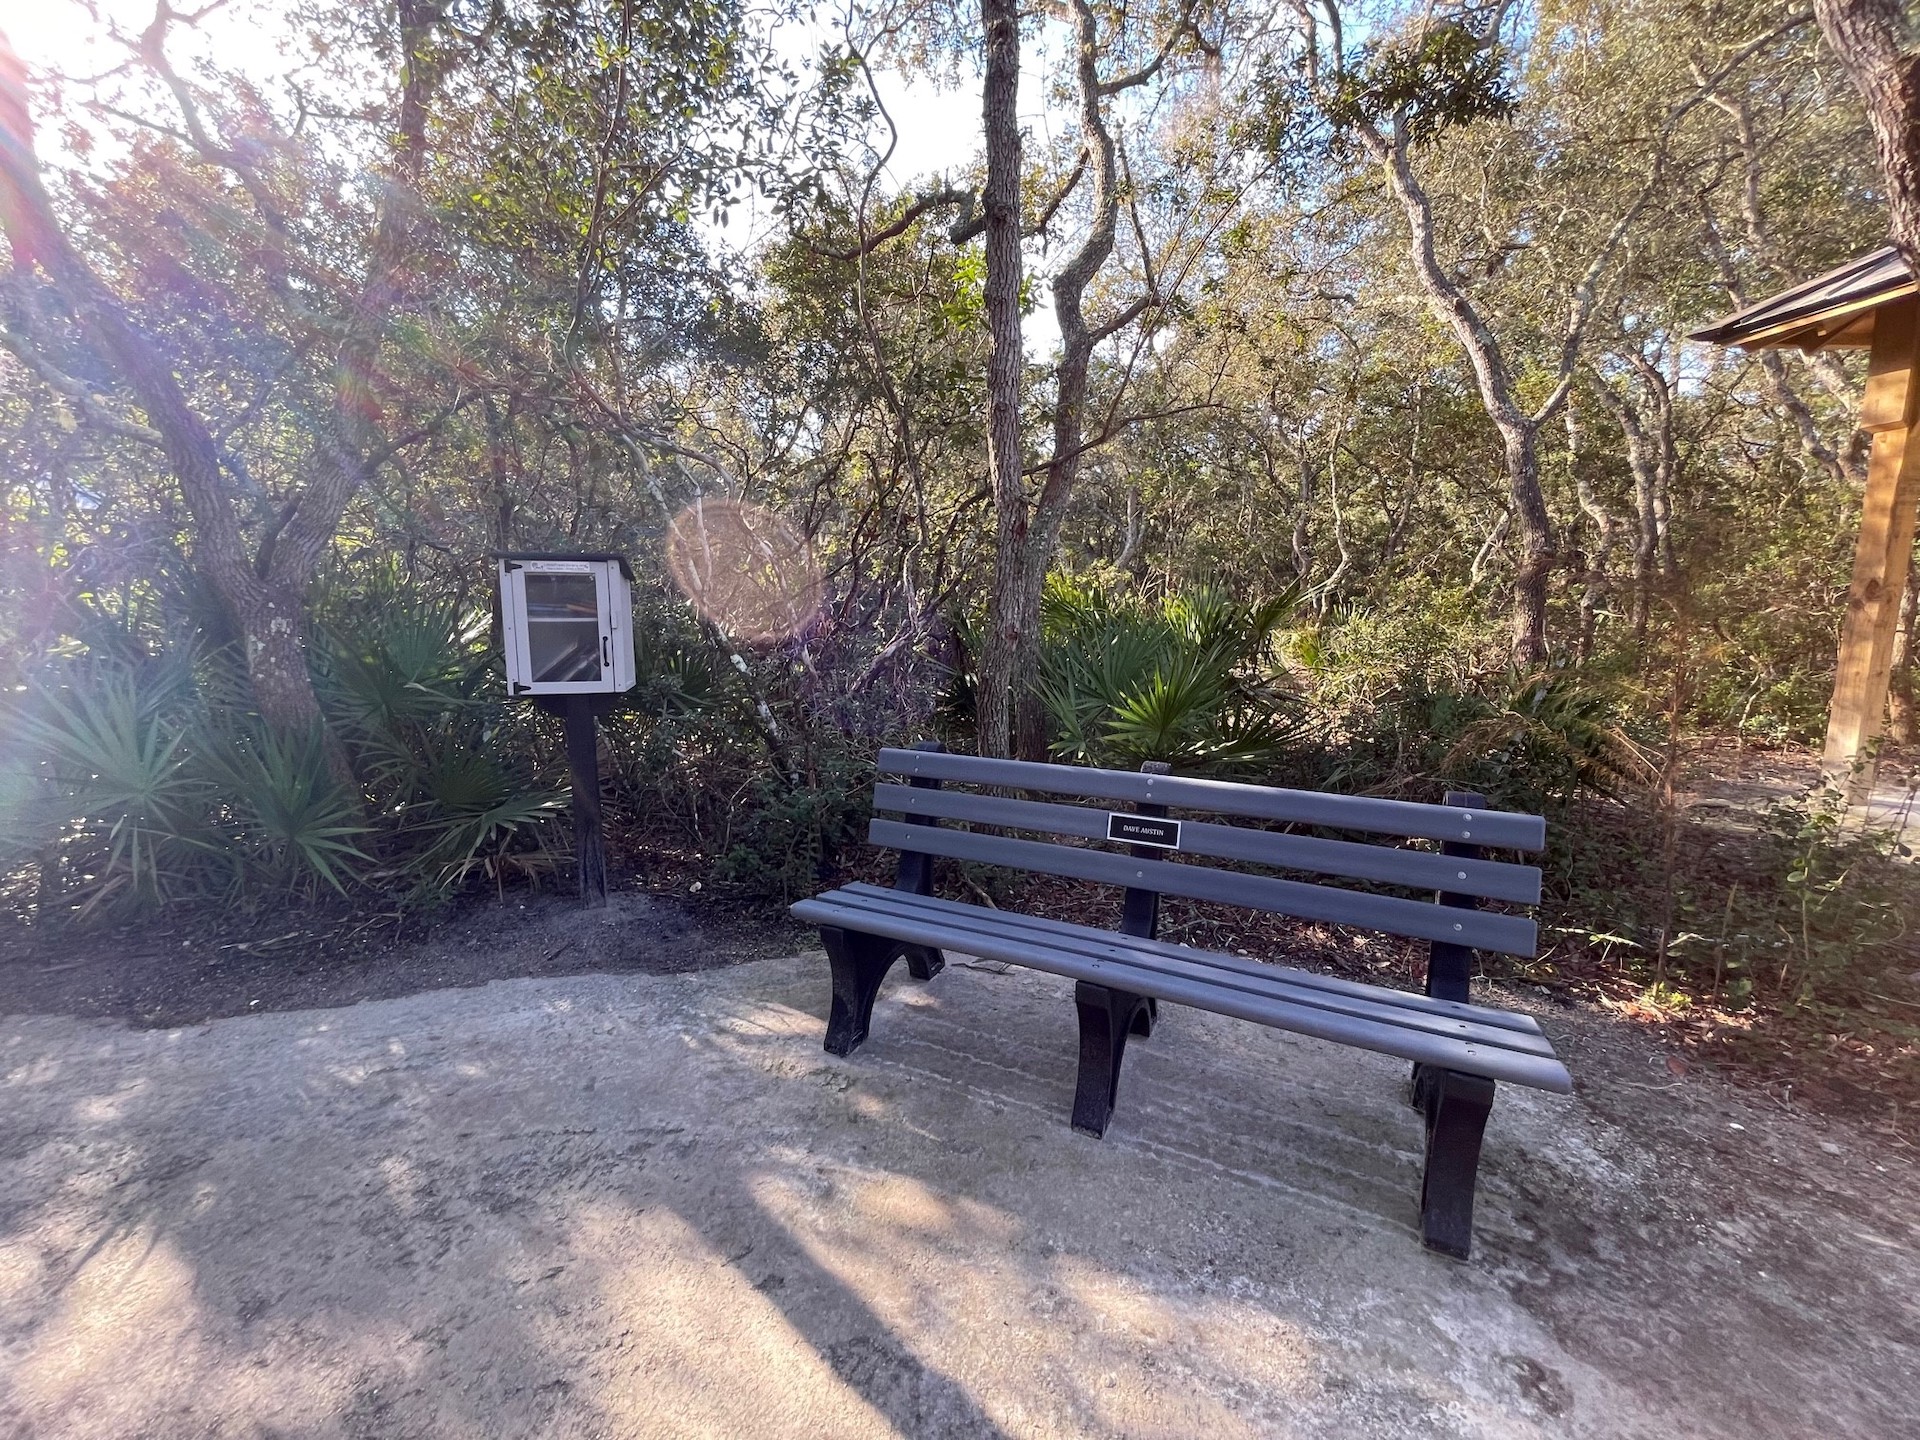 Simmons Road Park memorial bench